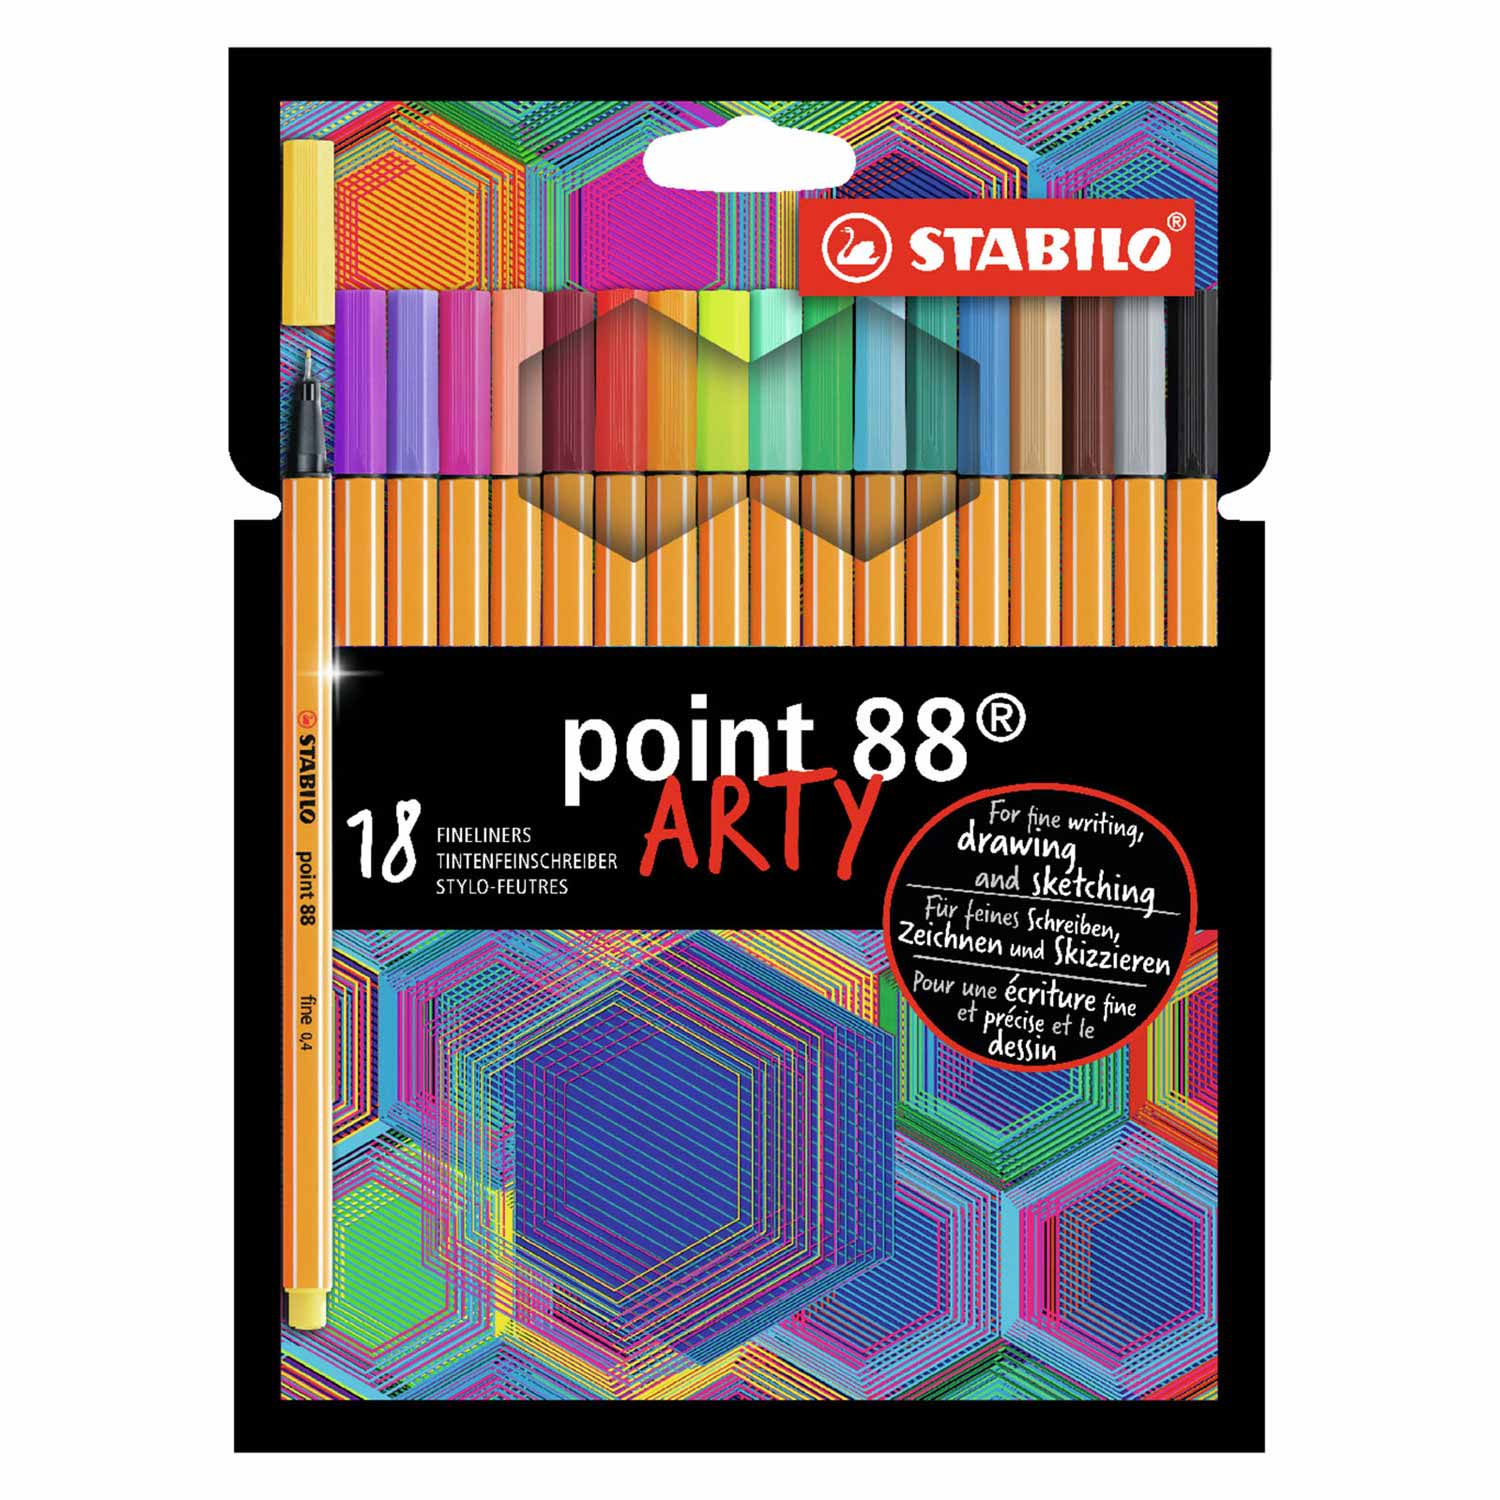 STABILO point 88 - Fineliner - ARTY - Set Met 18 Stuks